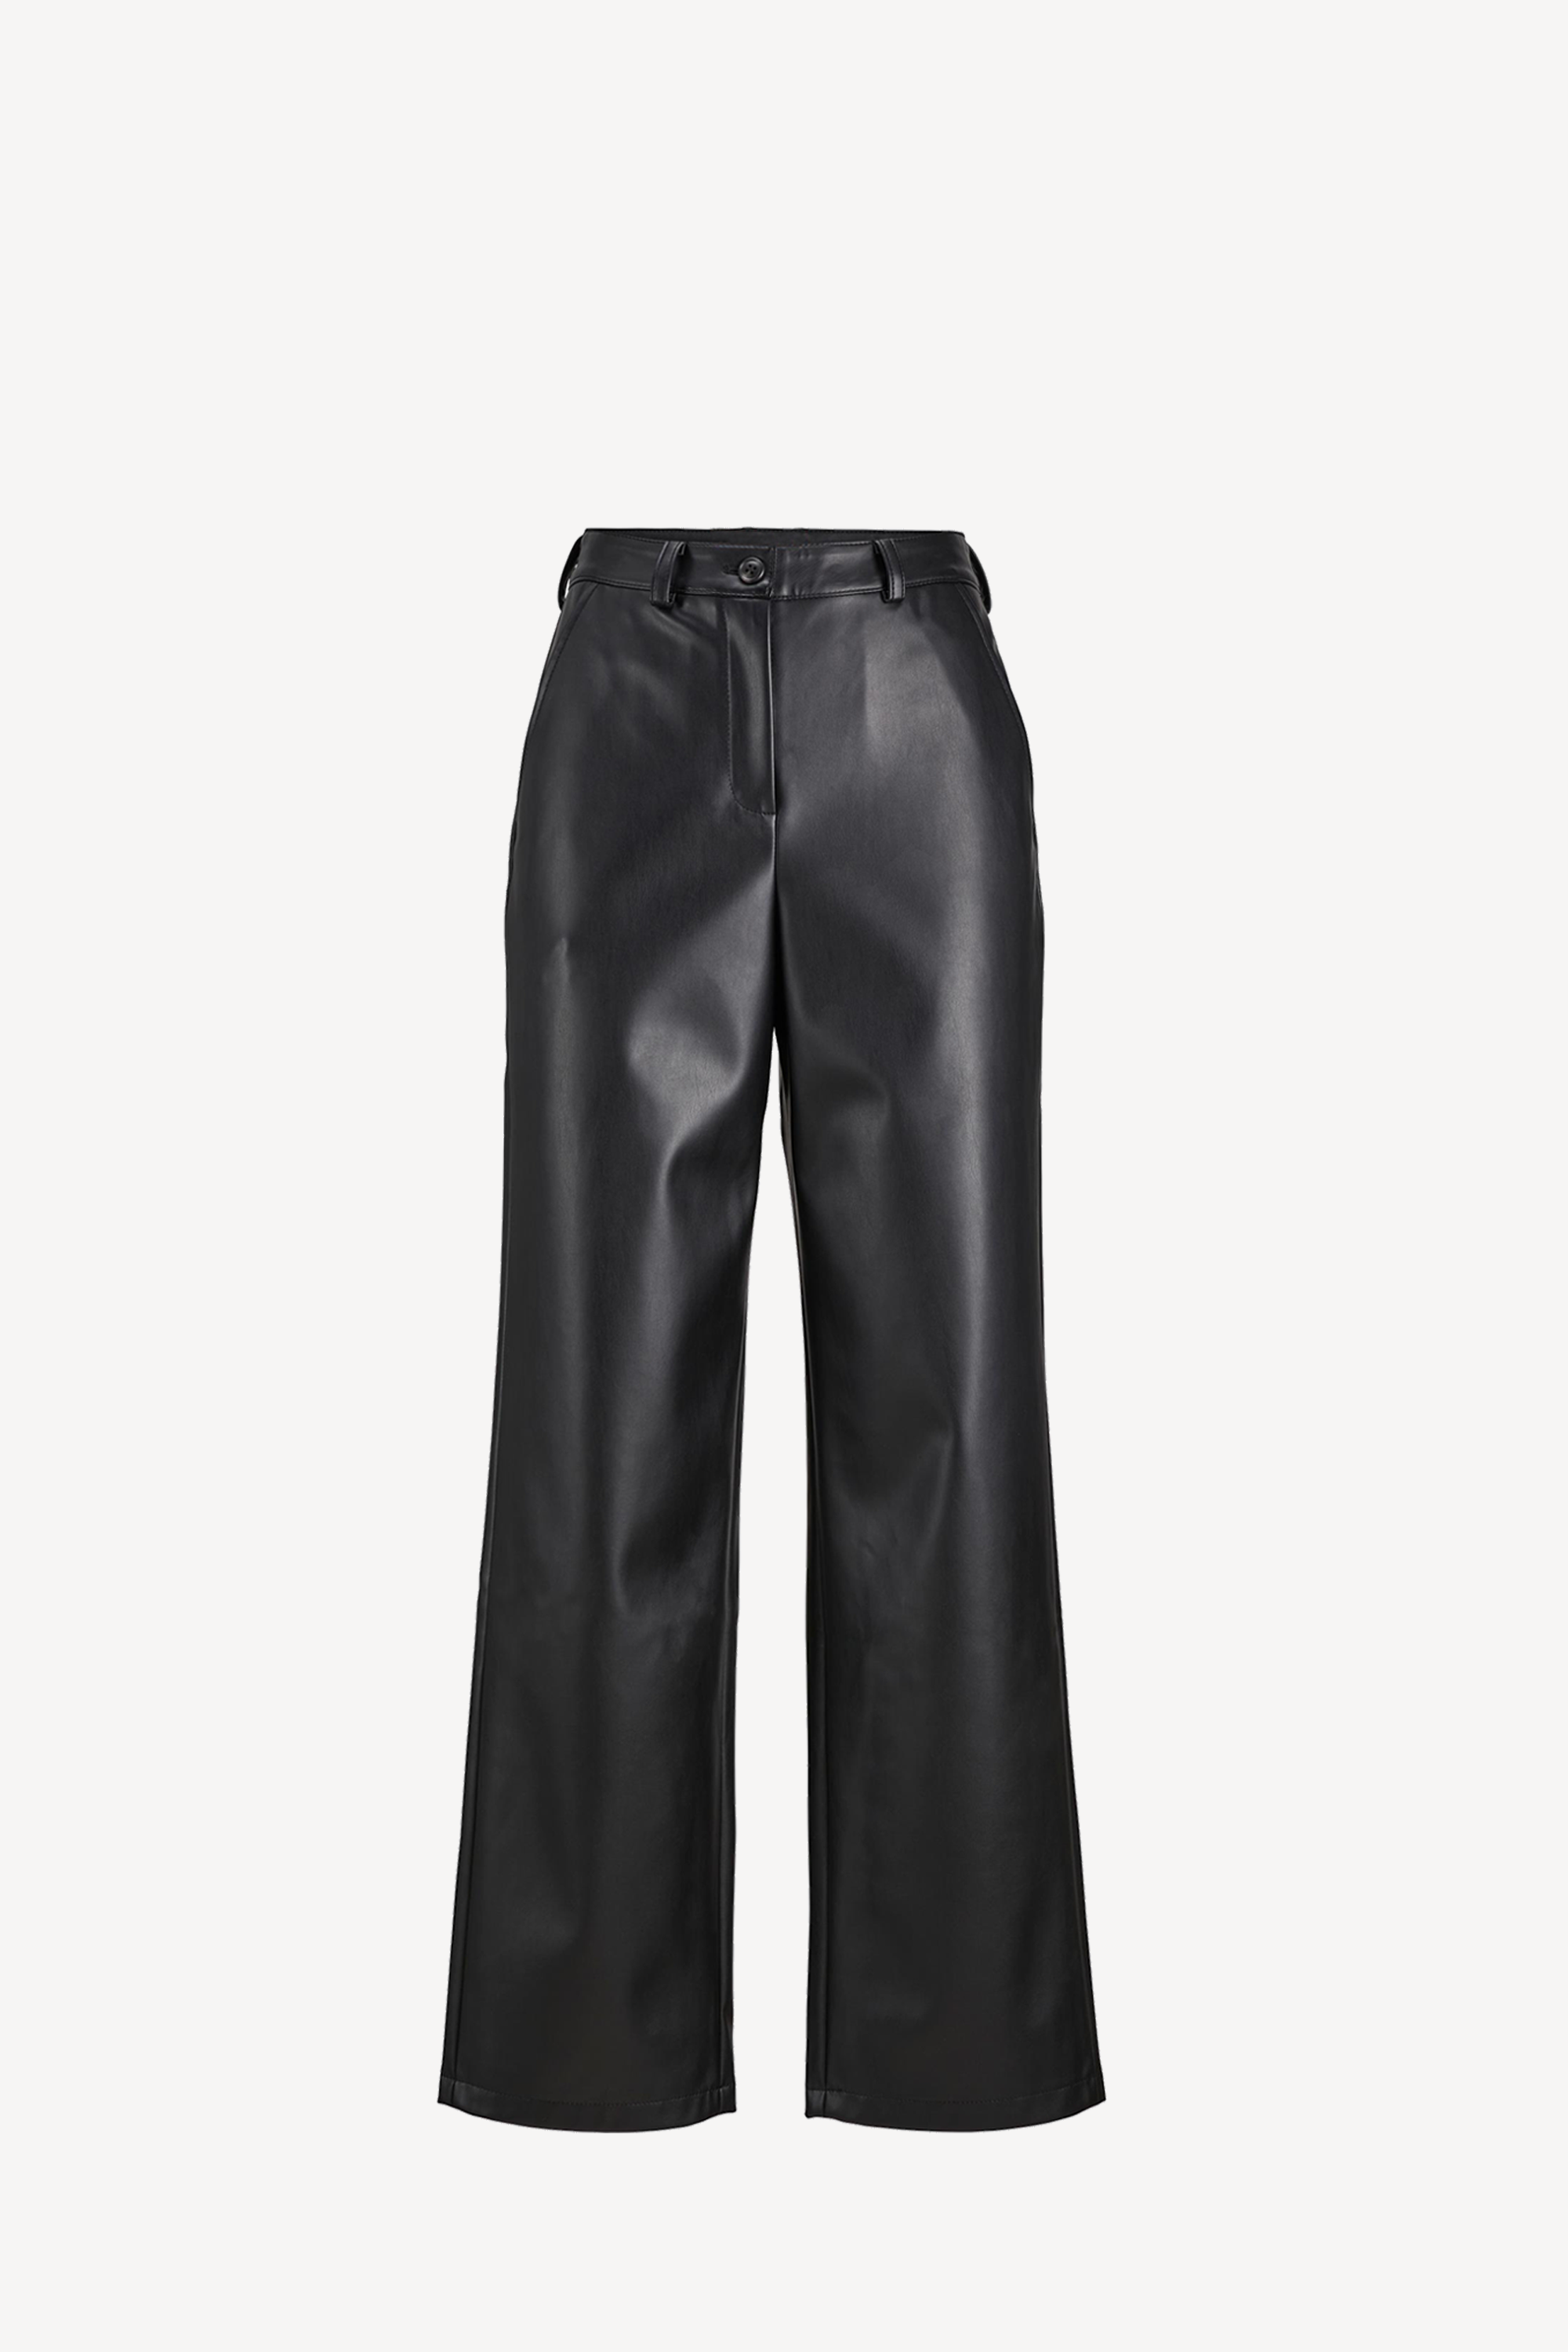 Marie Faux Leather Pants Black